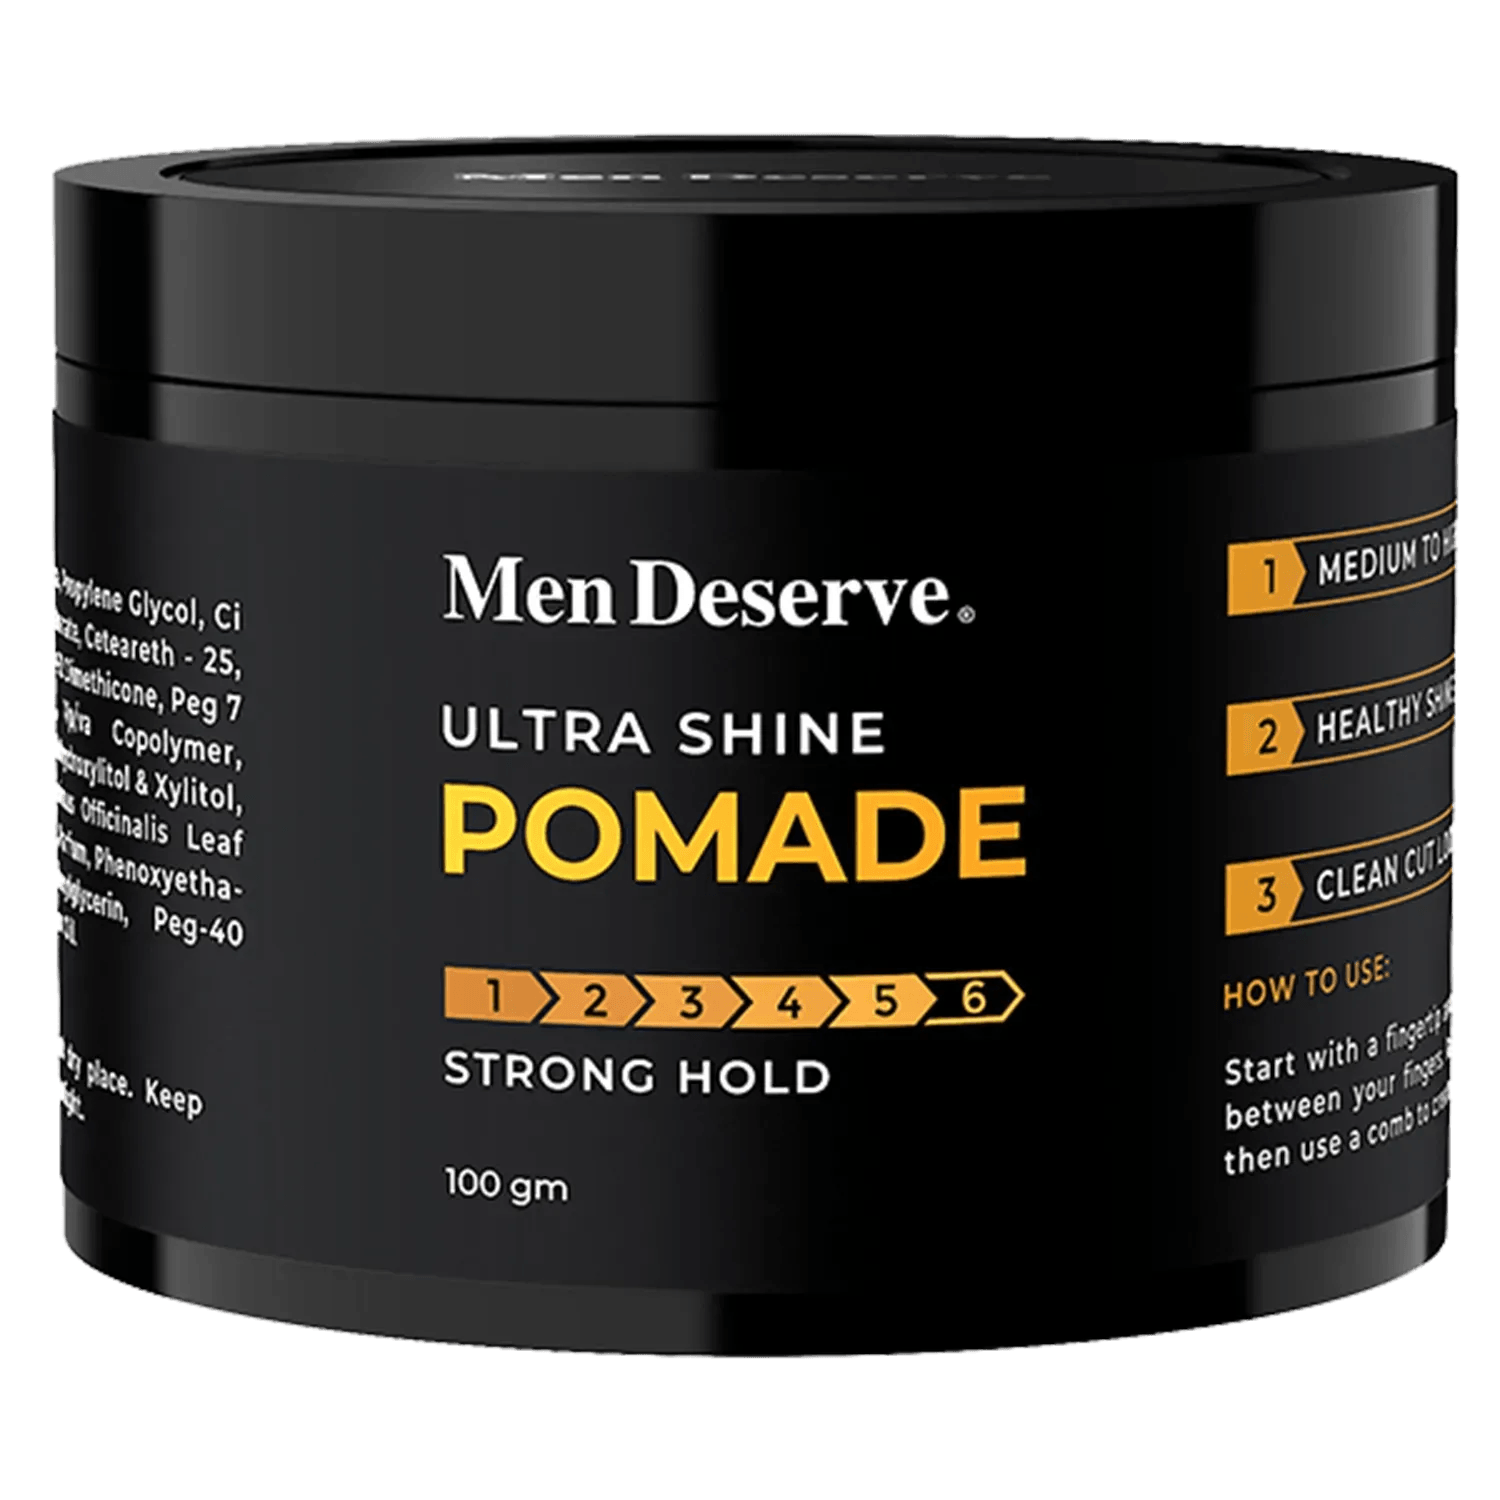 Men Deserve | Men Deserve Hair Styling Ultra Shine Pomade (100g)